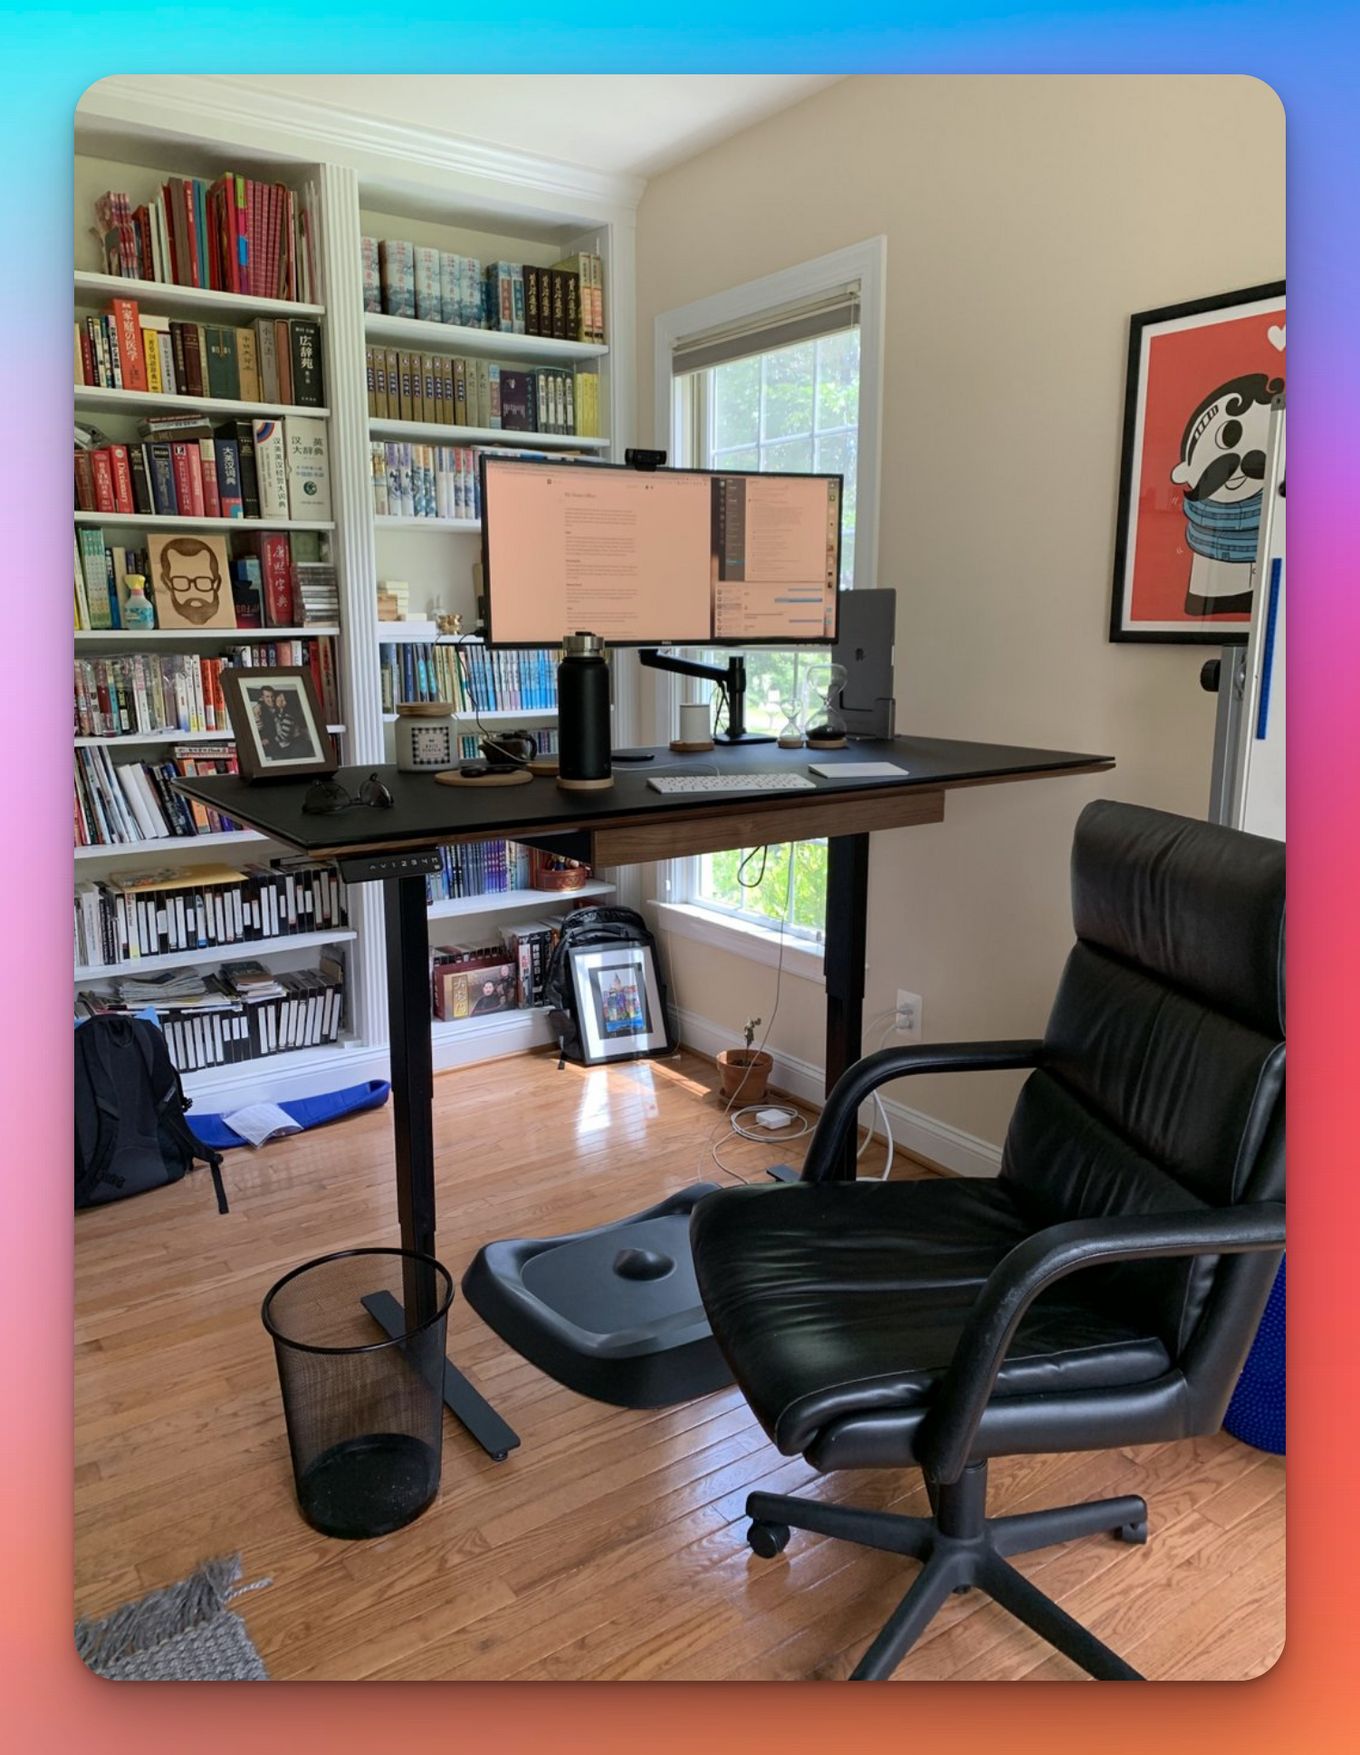 Mac Office Setup With Books - Apple Setup